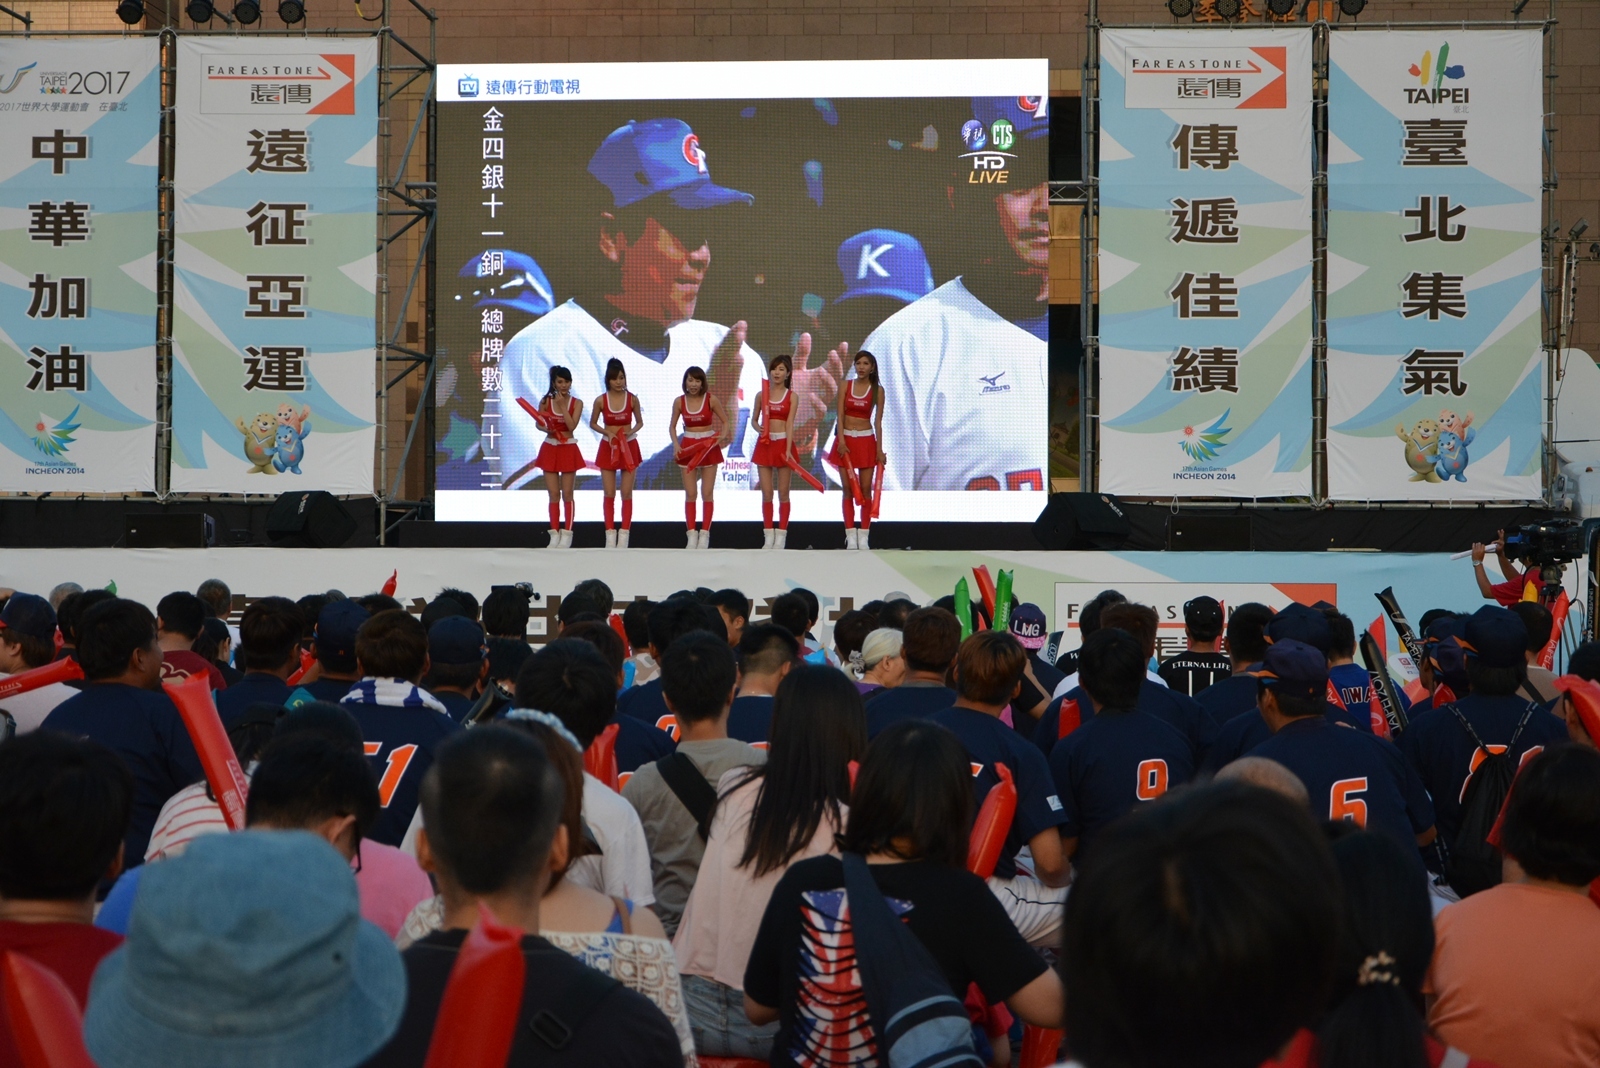 仁川亞運中韓棒球金牌之戰   華視全平台轉播  77萬收視人口再創新高 | 華視新聞